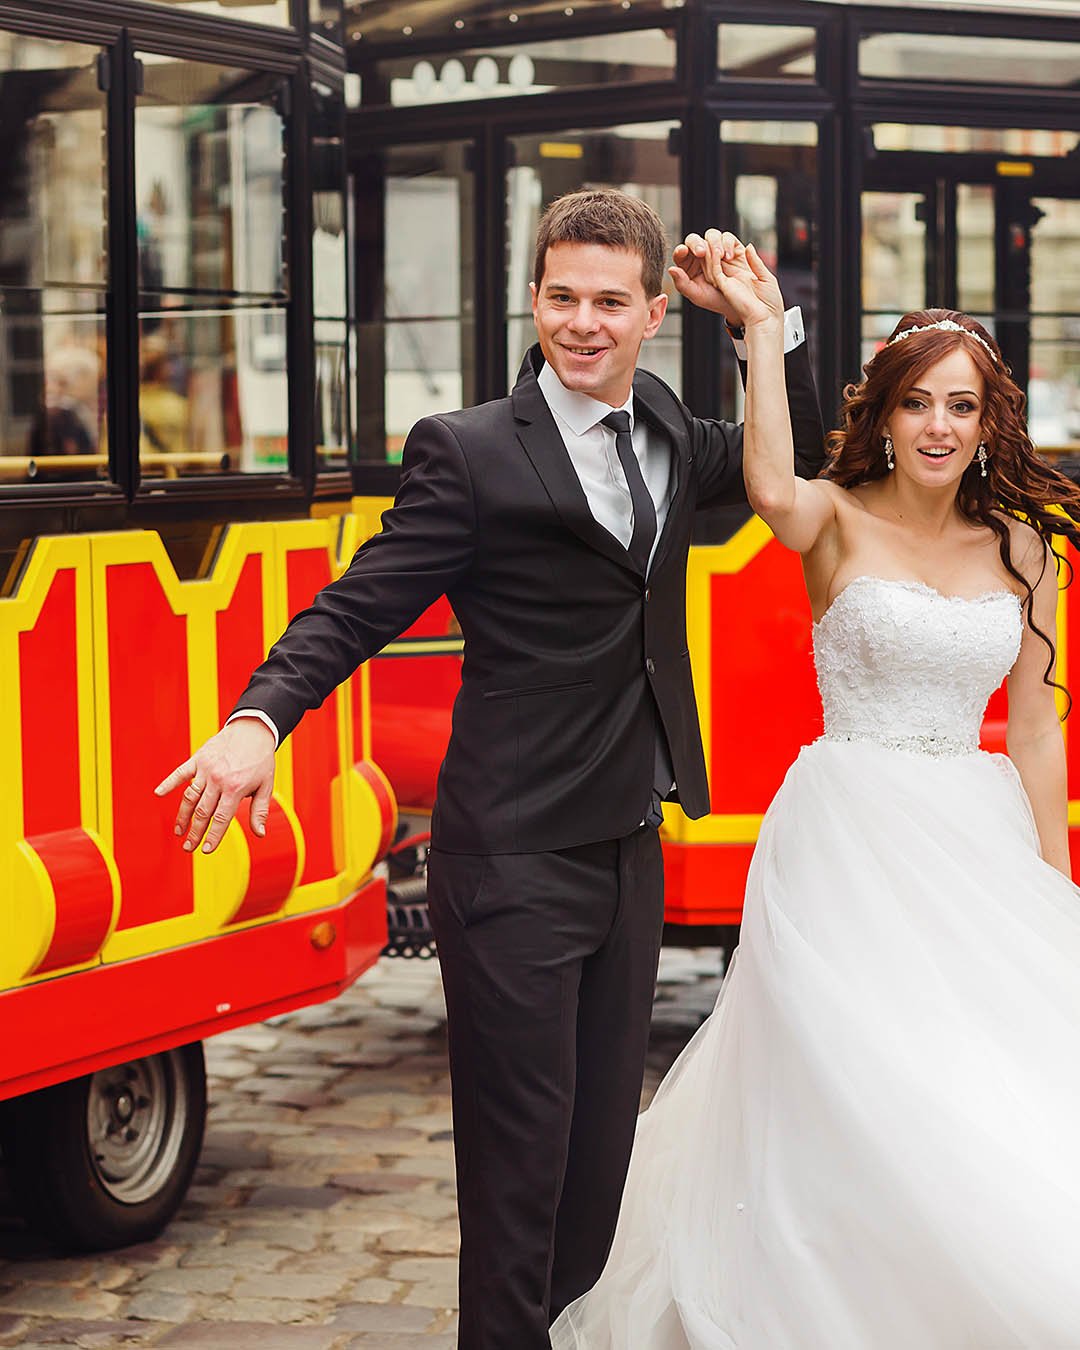 rustic wedding ideas newlyweds near wedding trolley